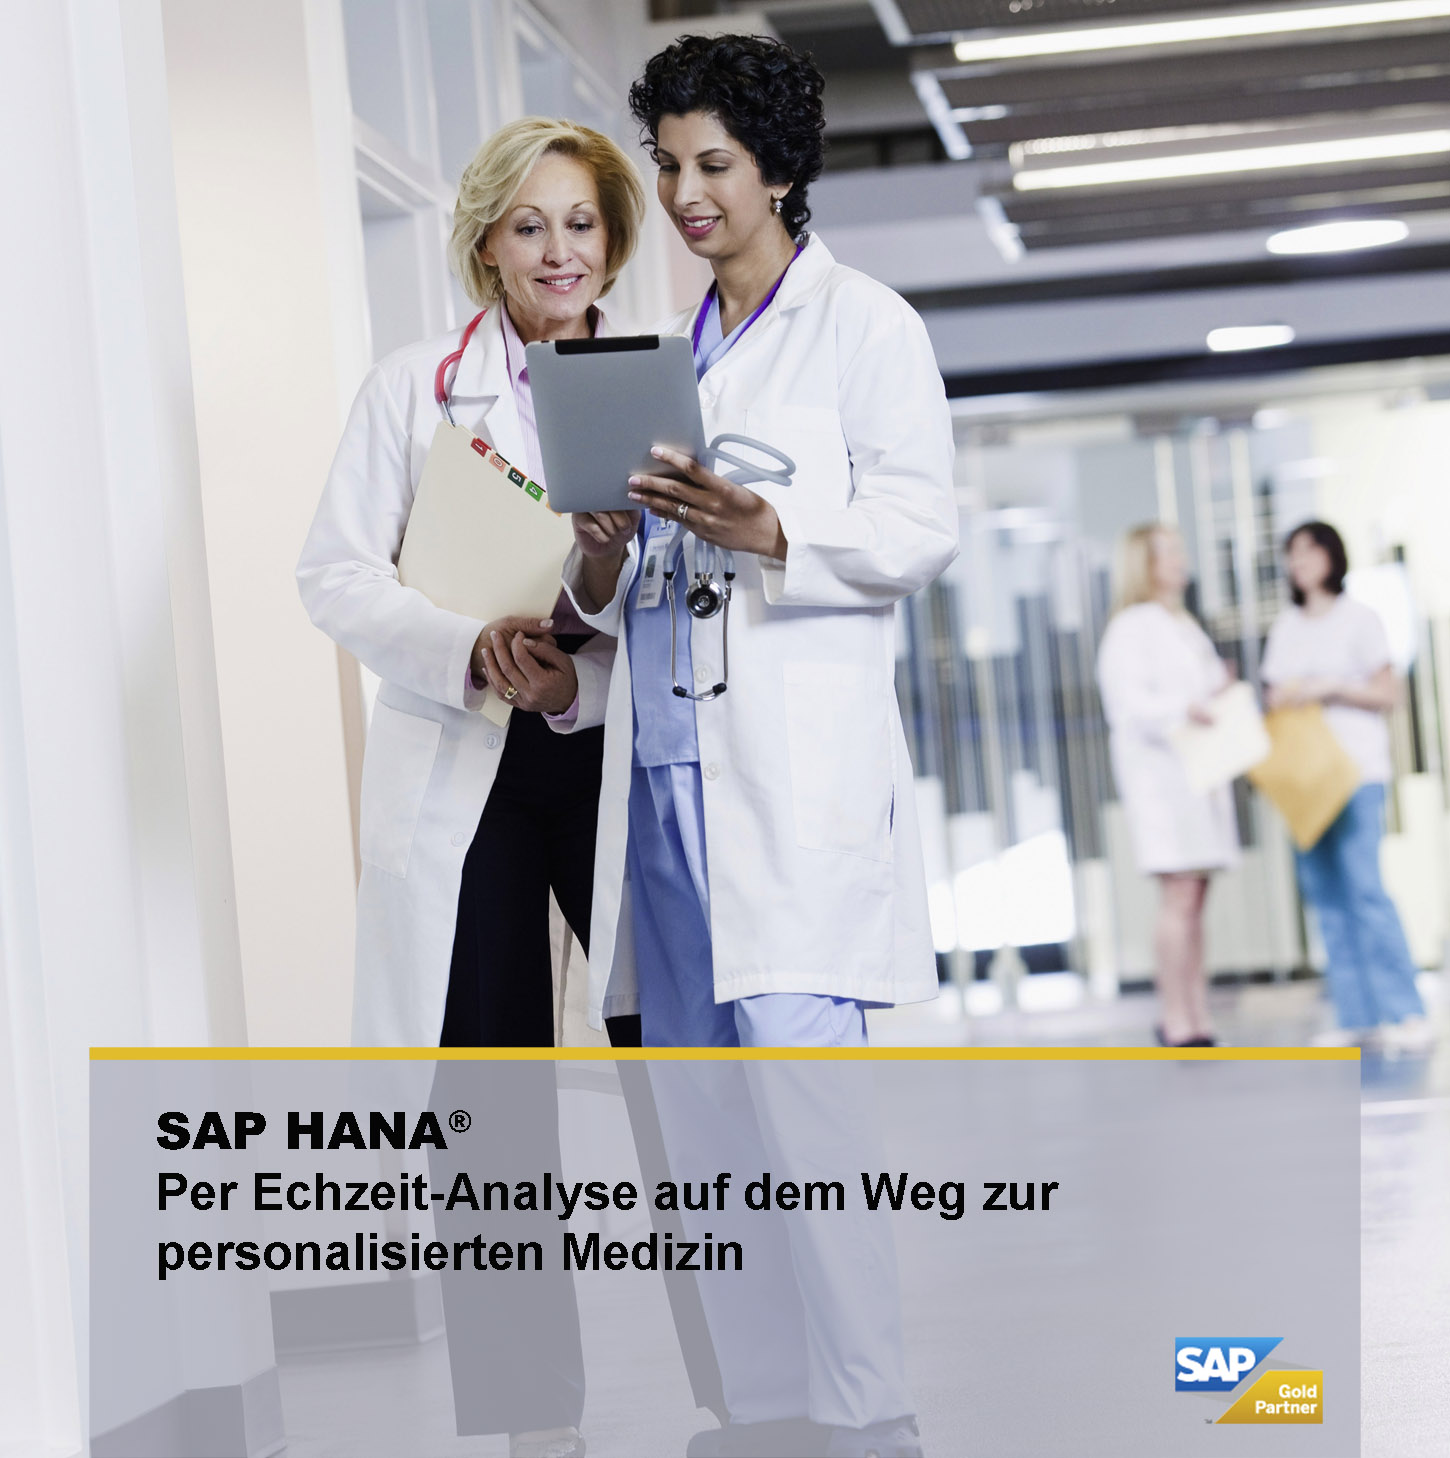 SAP HANA bietet durch Echzeit-Analyse den Weg zur personalisierten Medizin